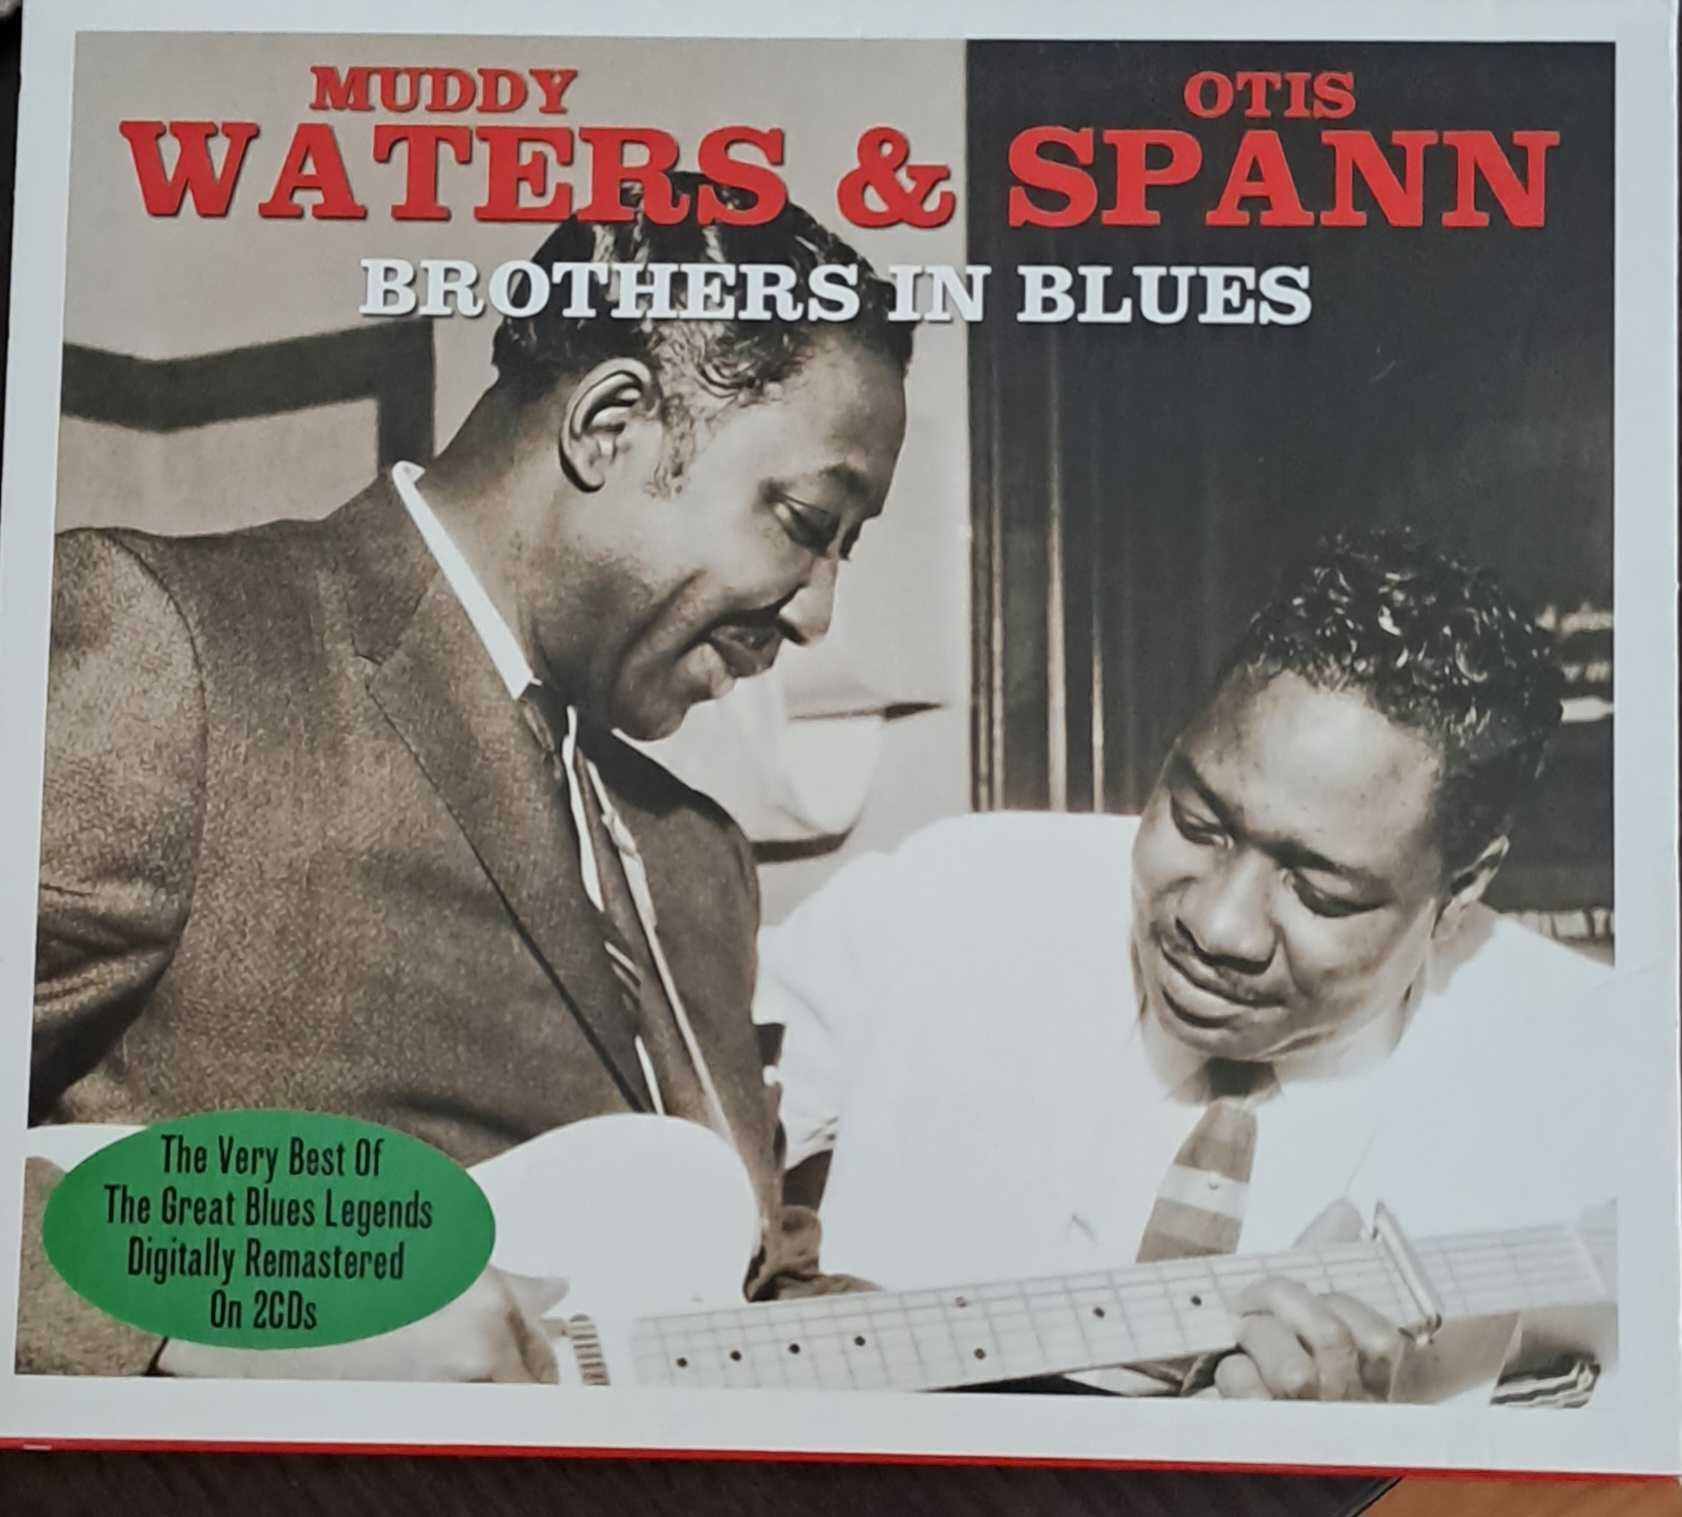 Muddy Waters & Otis Spann - "Brothers in Blues"